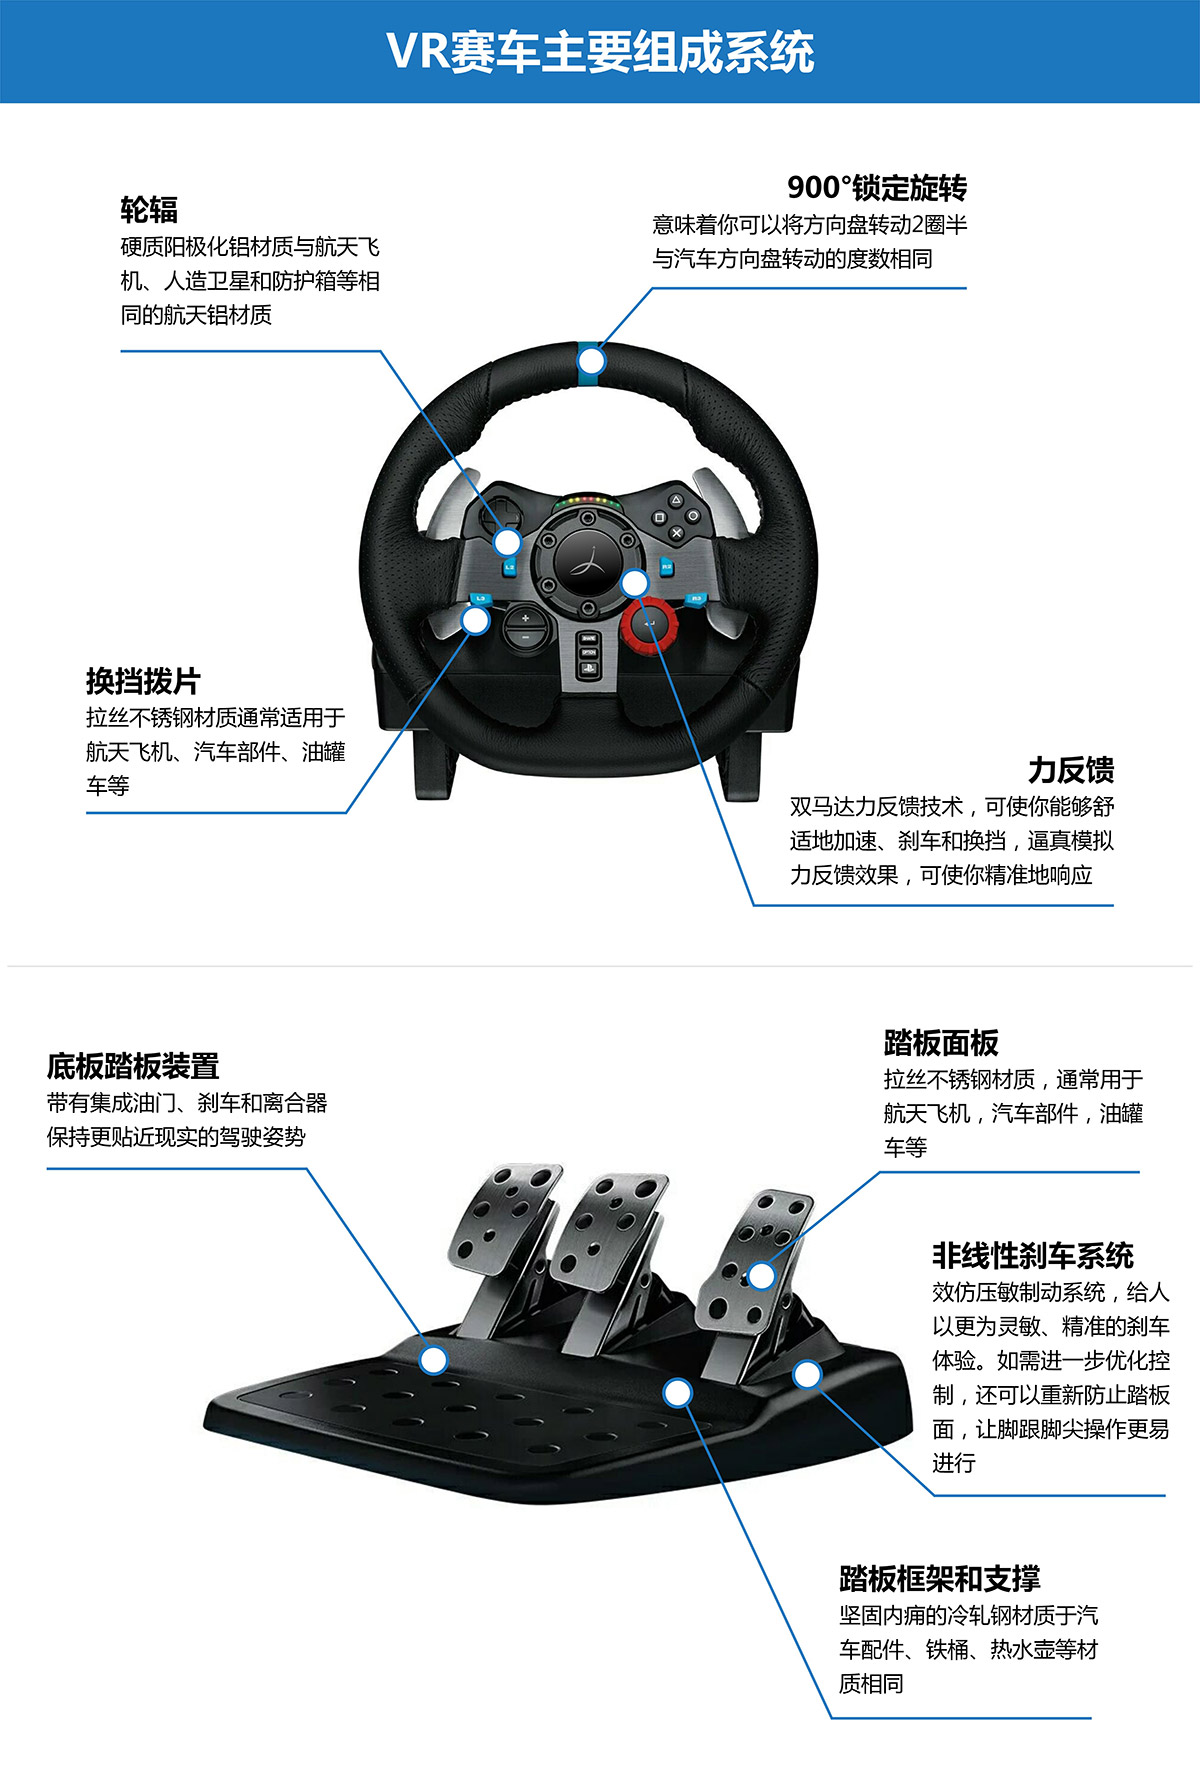 06-VR虚拟赛车主要组成系统.jpg